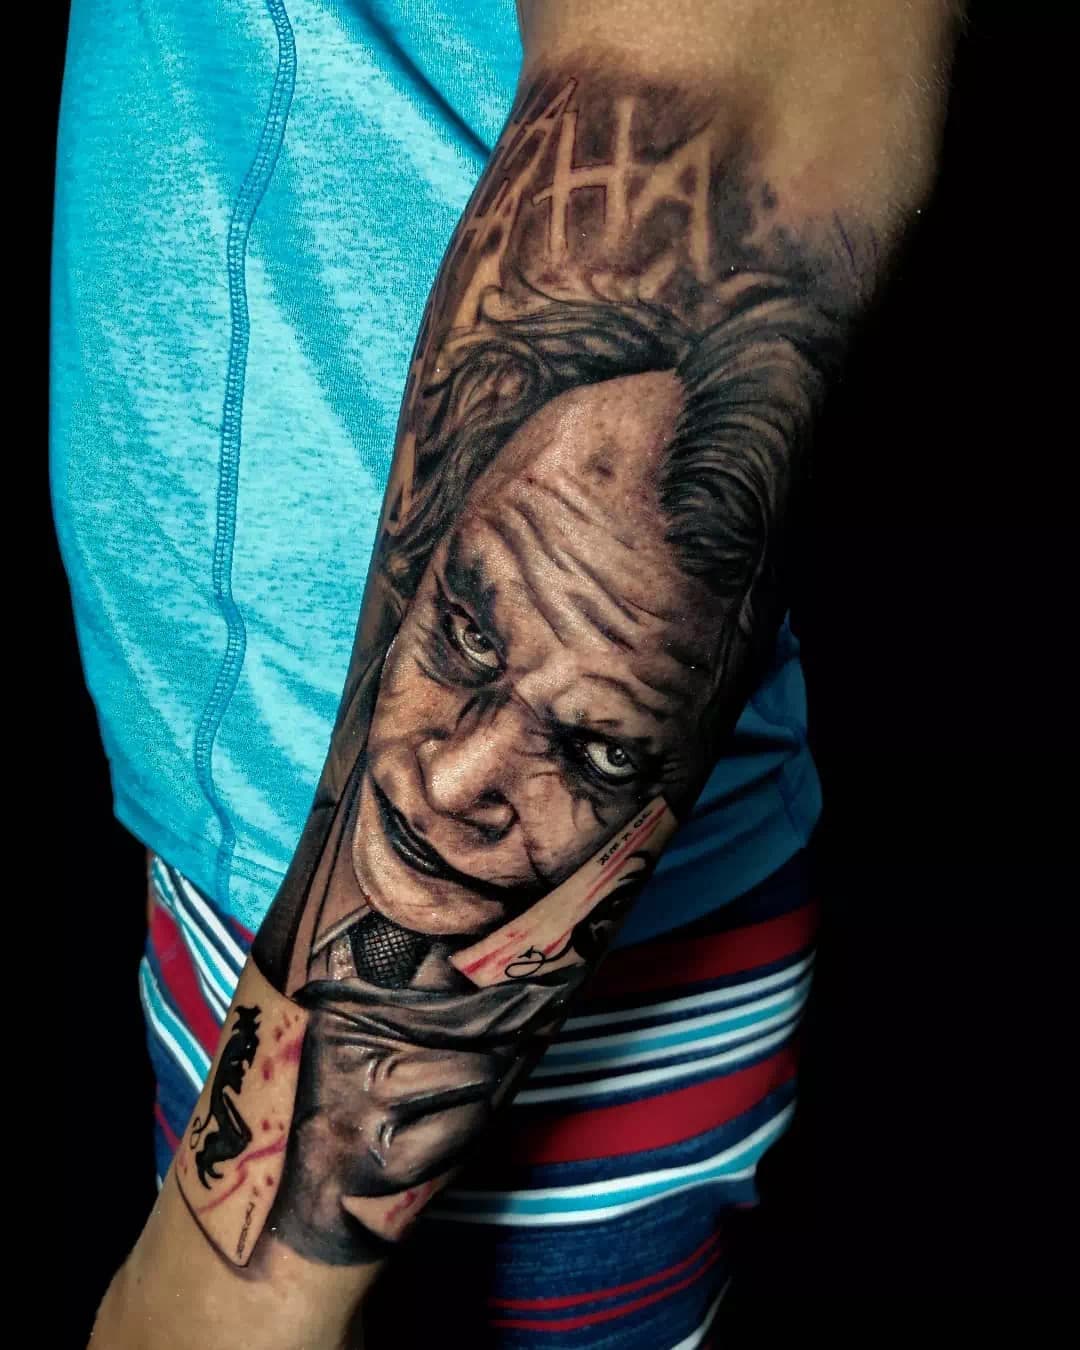 Tatuaje del Joker 38